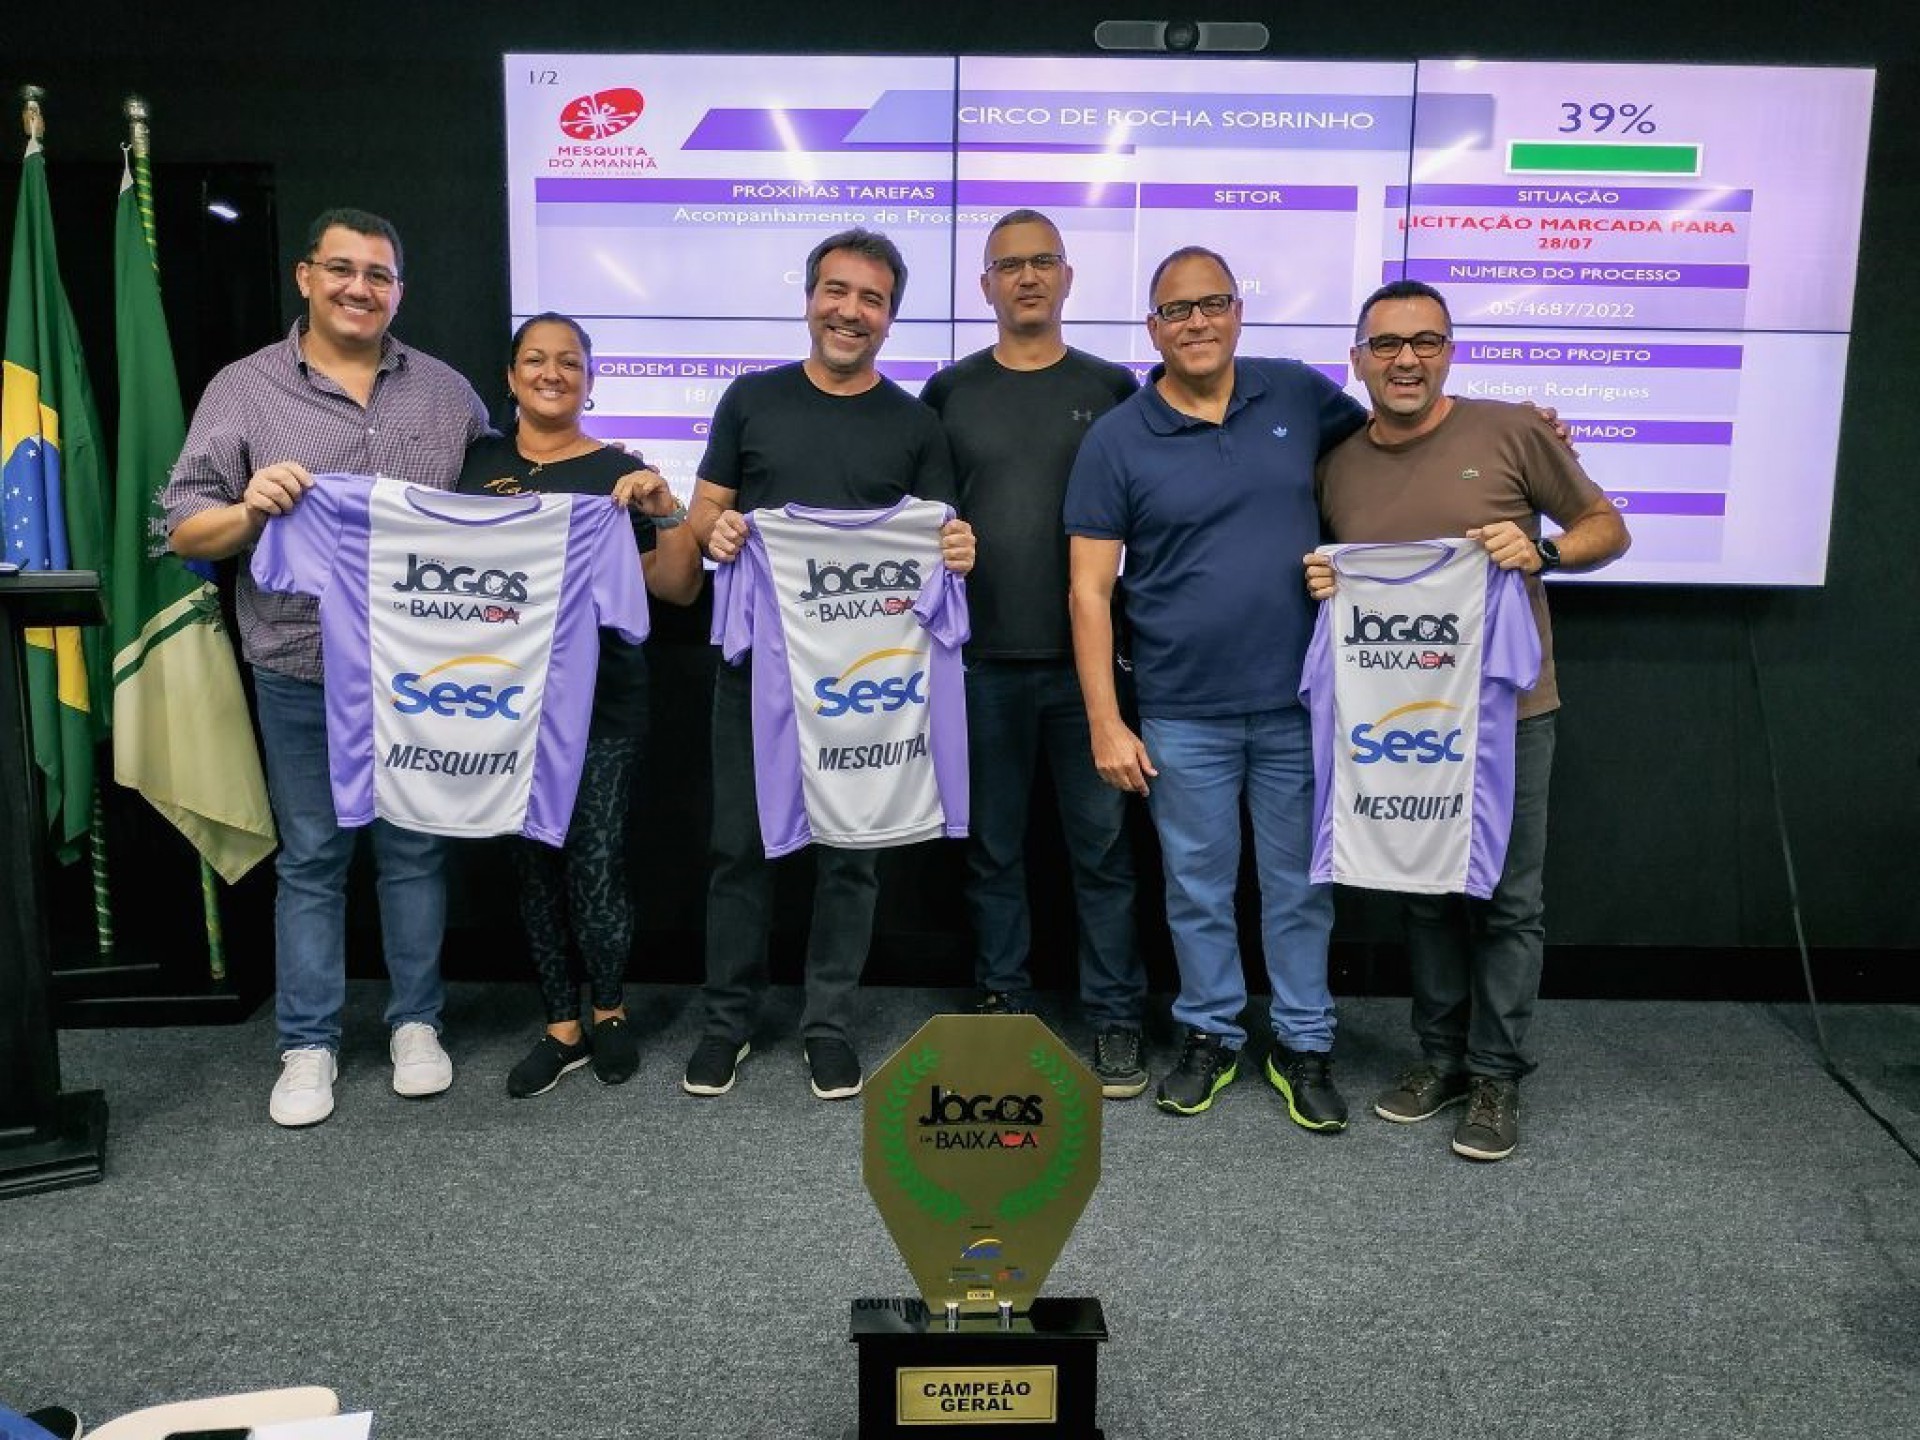 O município de Mesquita foi o grande campeão dos Jogos da Baixada 2022 - Divulgação